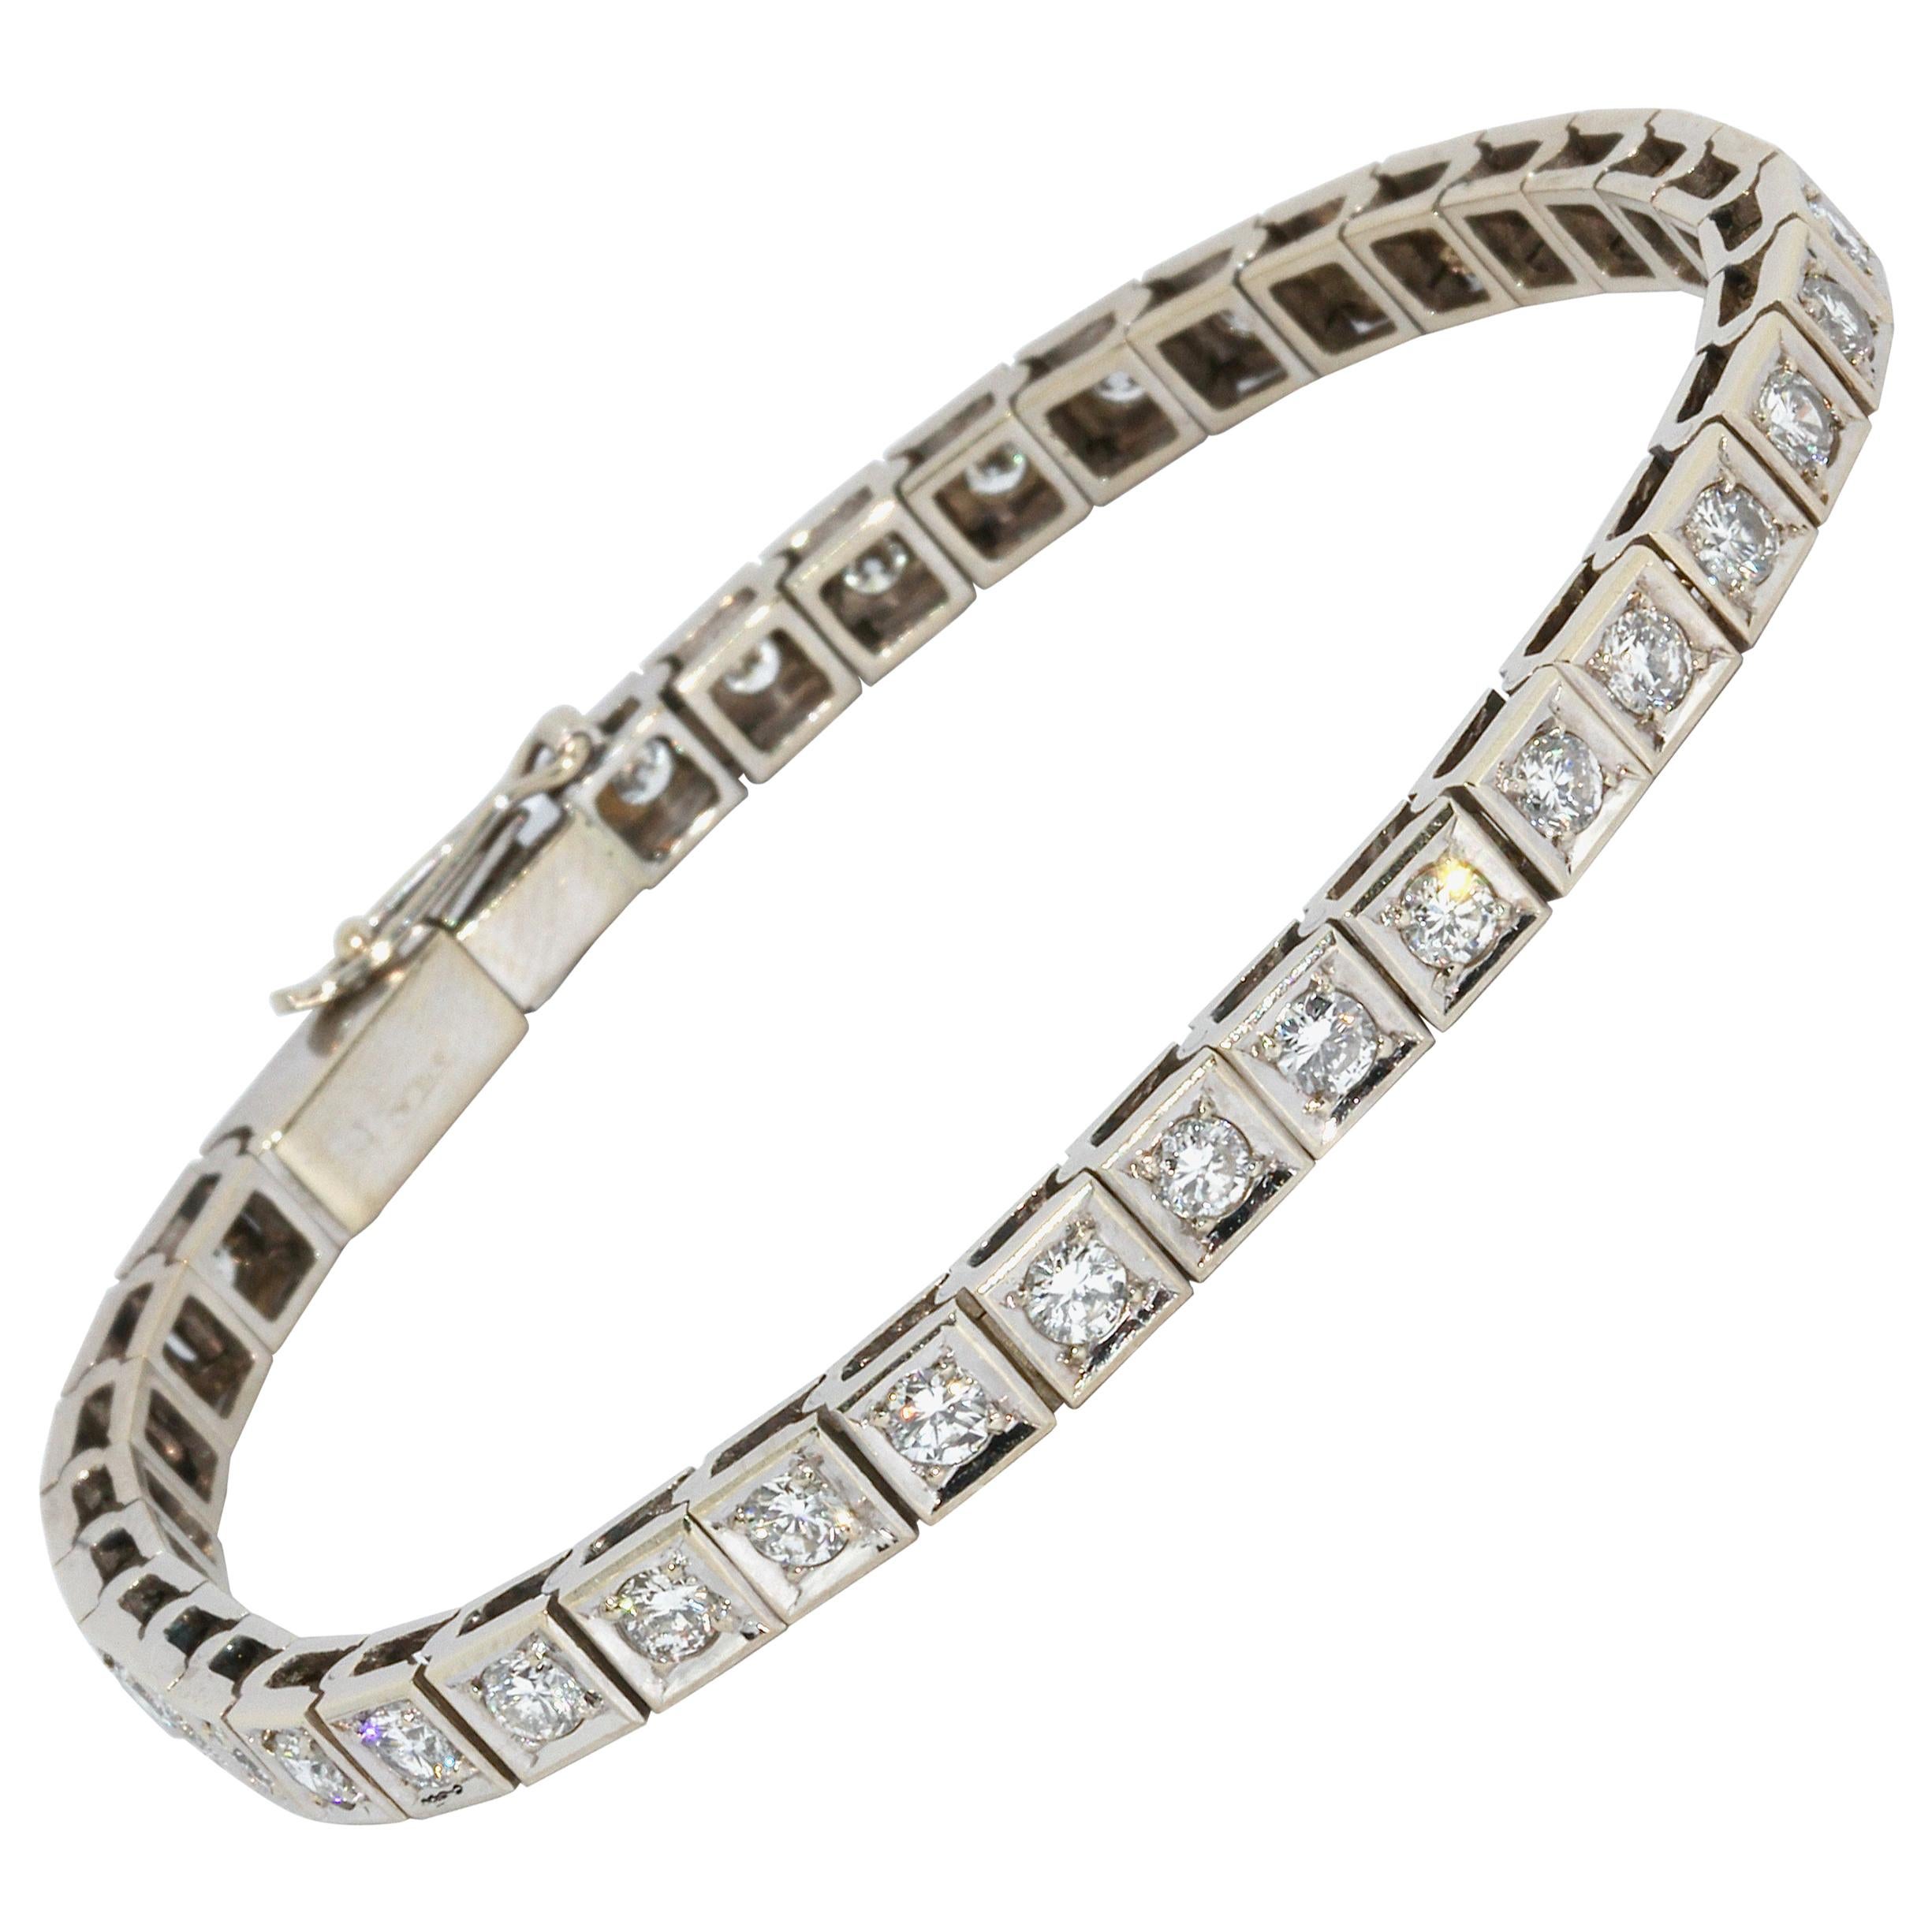 18 Karat White Gold Tennis Bracelet, Set with 38 Round White Diamonds